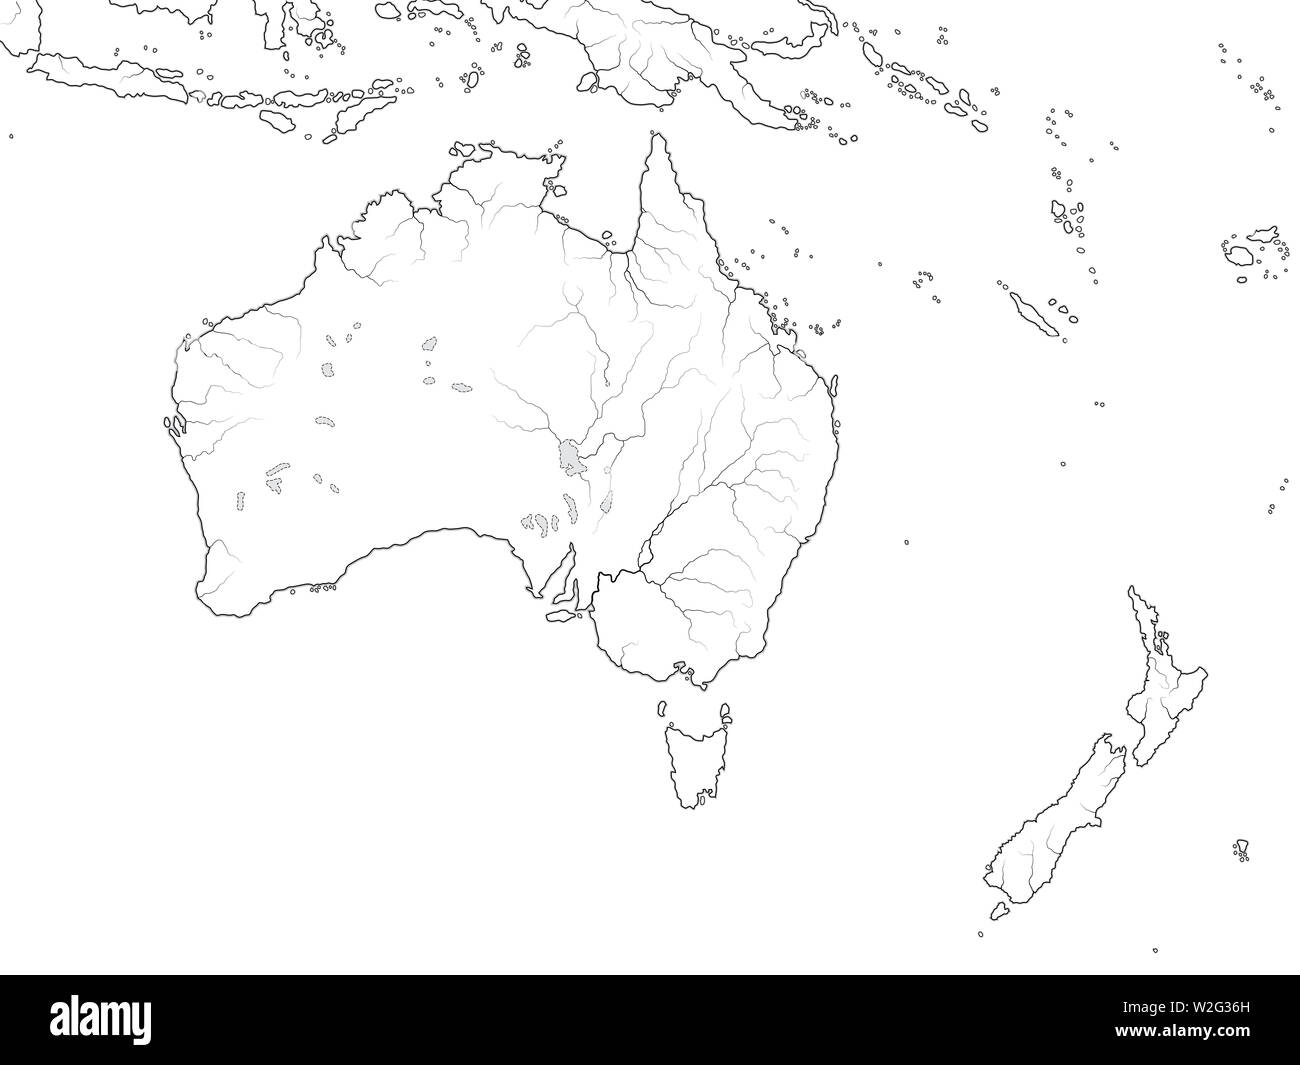 Контурные карты австралия 10 класс. Контурная карта Австралии. Пустая контурная карта Австралии. Карта Австралии и Океании 7 класс контурная карта. Материк Австралия контурная карта.